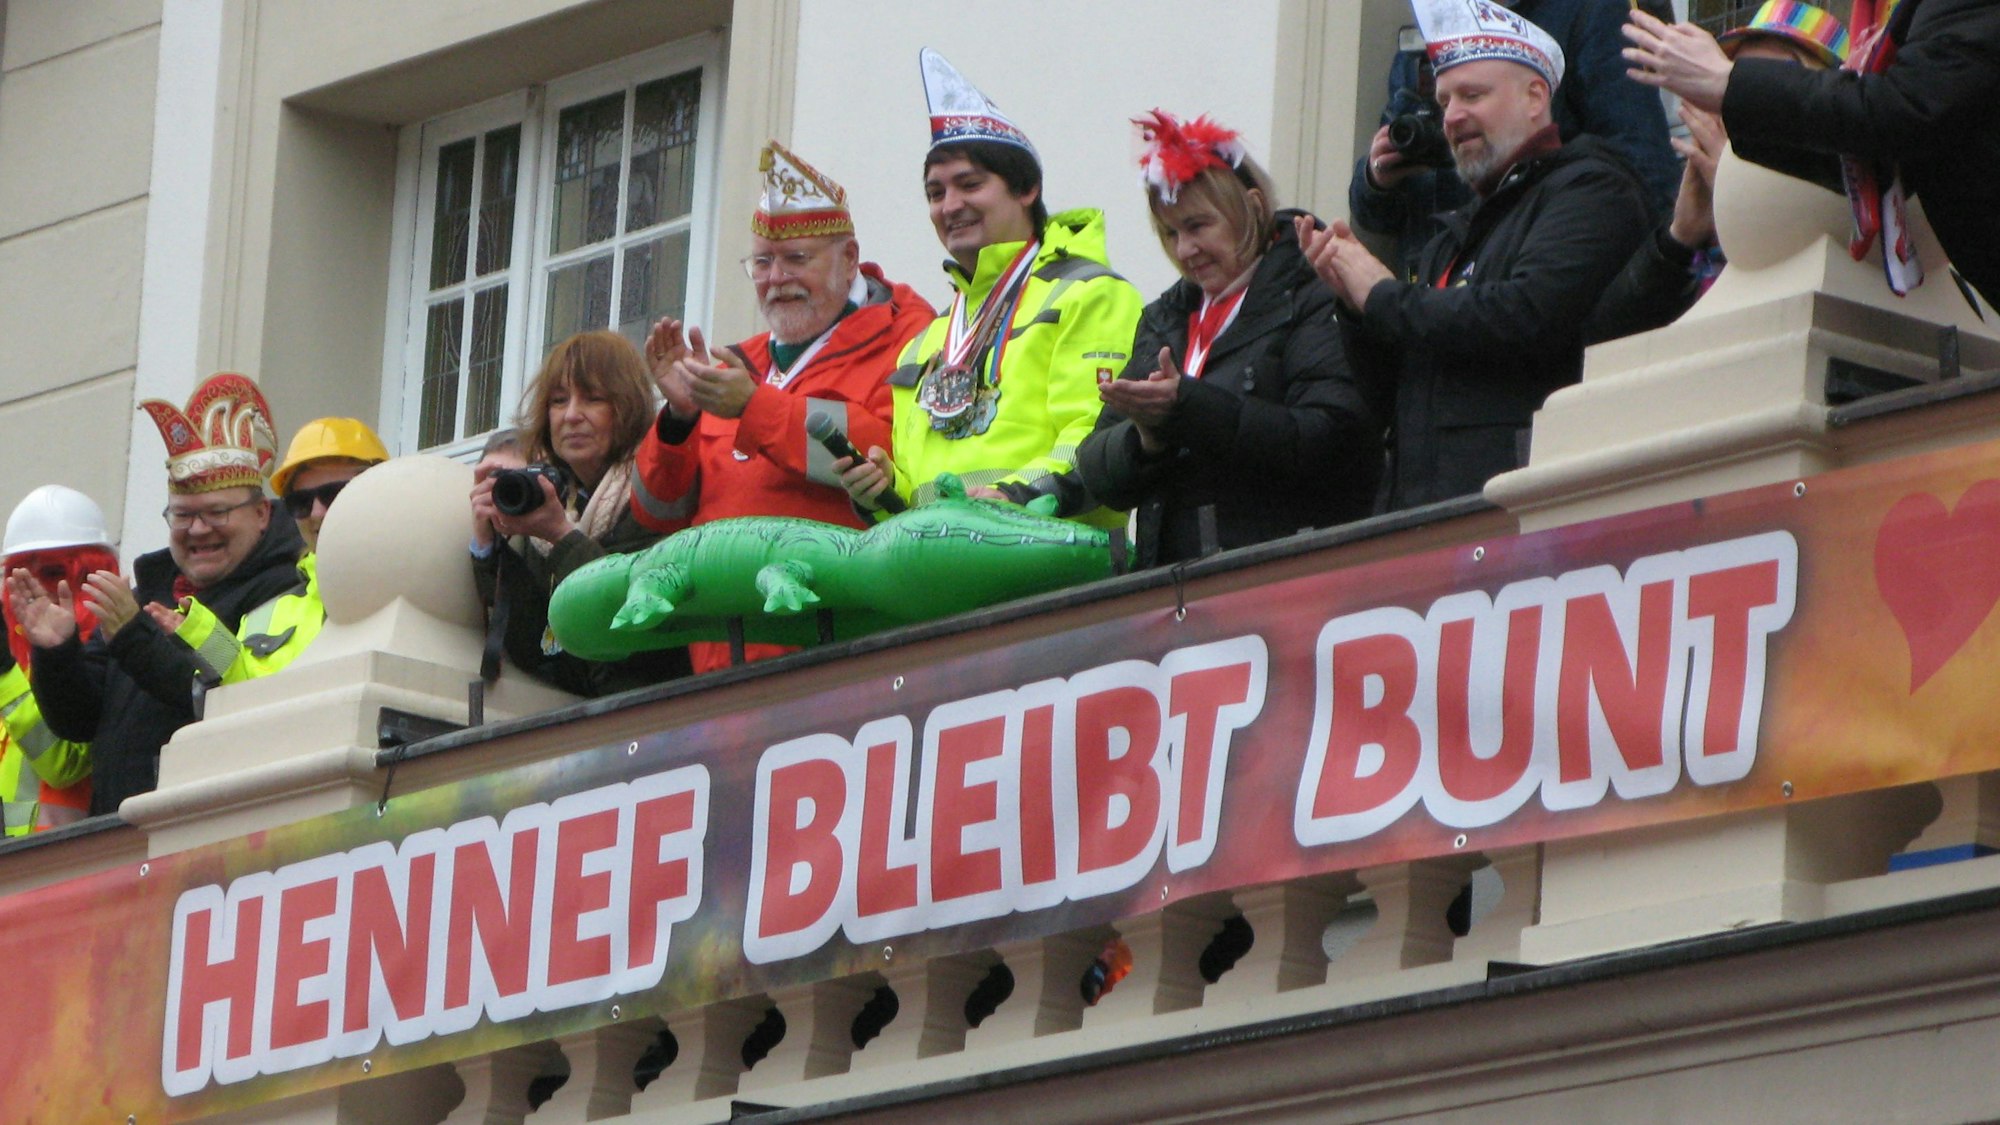 Mehrere applaudierende Personen auf einem Balkon, dabei der Hennefer Bürgermeister mit einem aufblasbaren Krokodil, davor das Transparent mit der Aufschrift „Hennef bleibt bunt“.